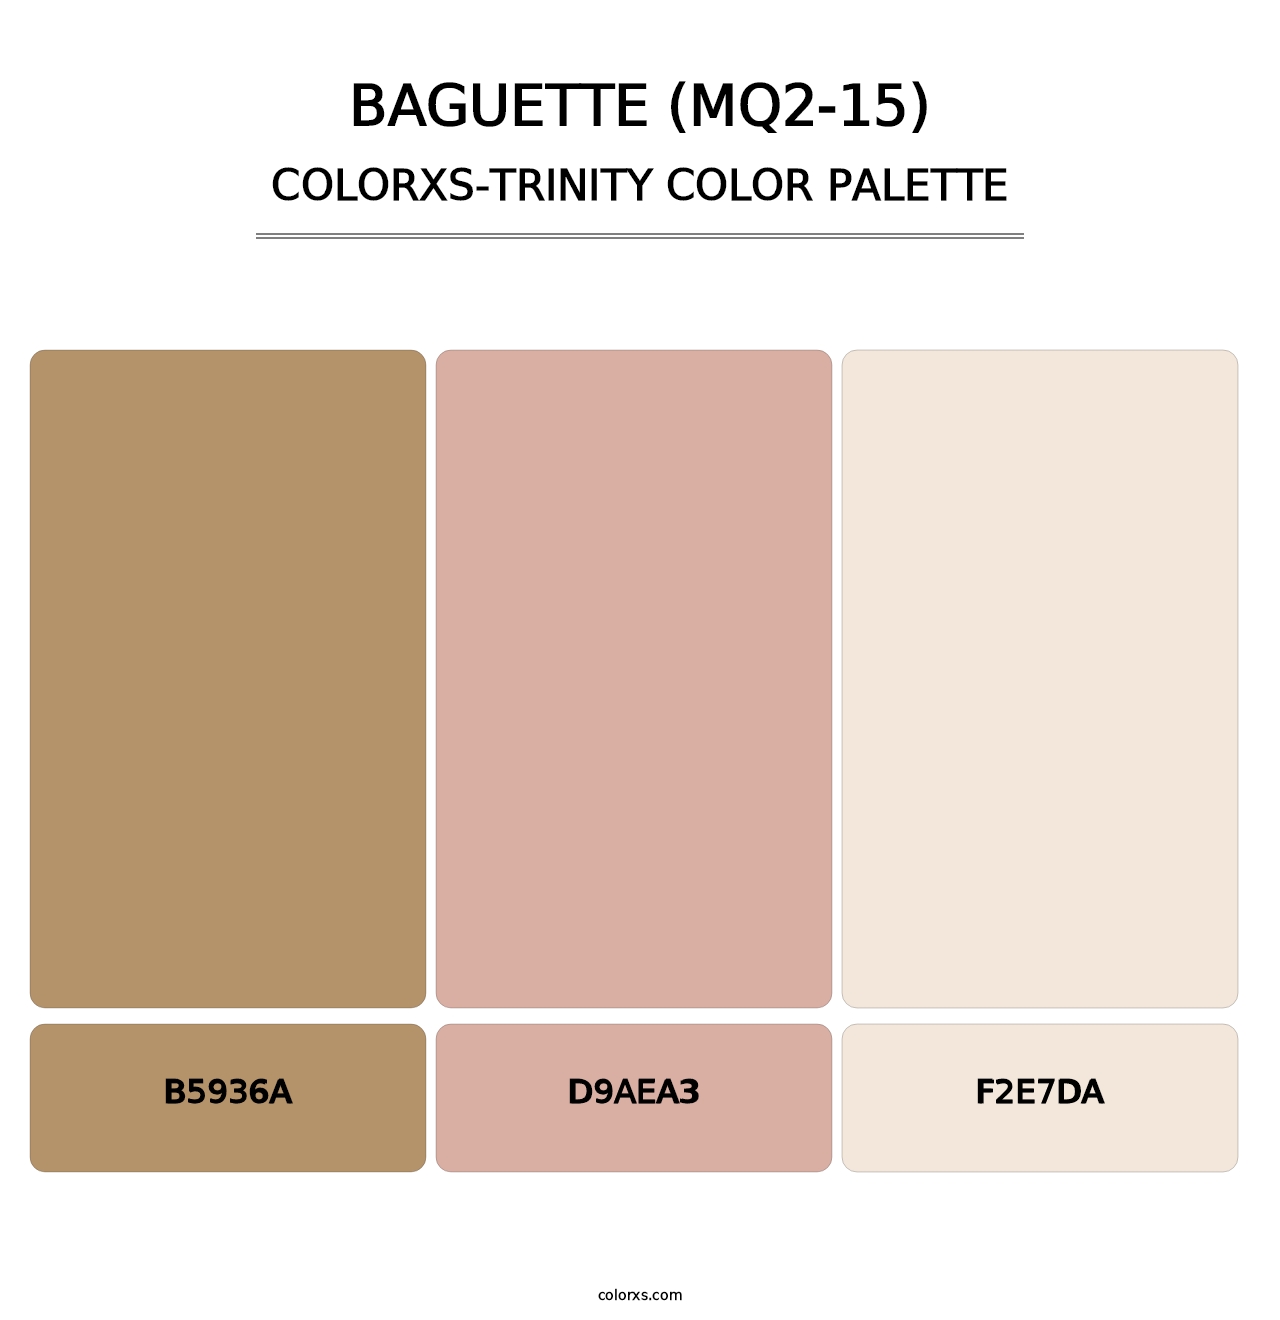 Baguette (MQ2-15) - Colorxs Trinity Palette